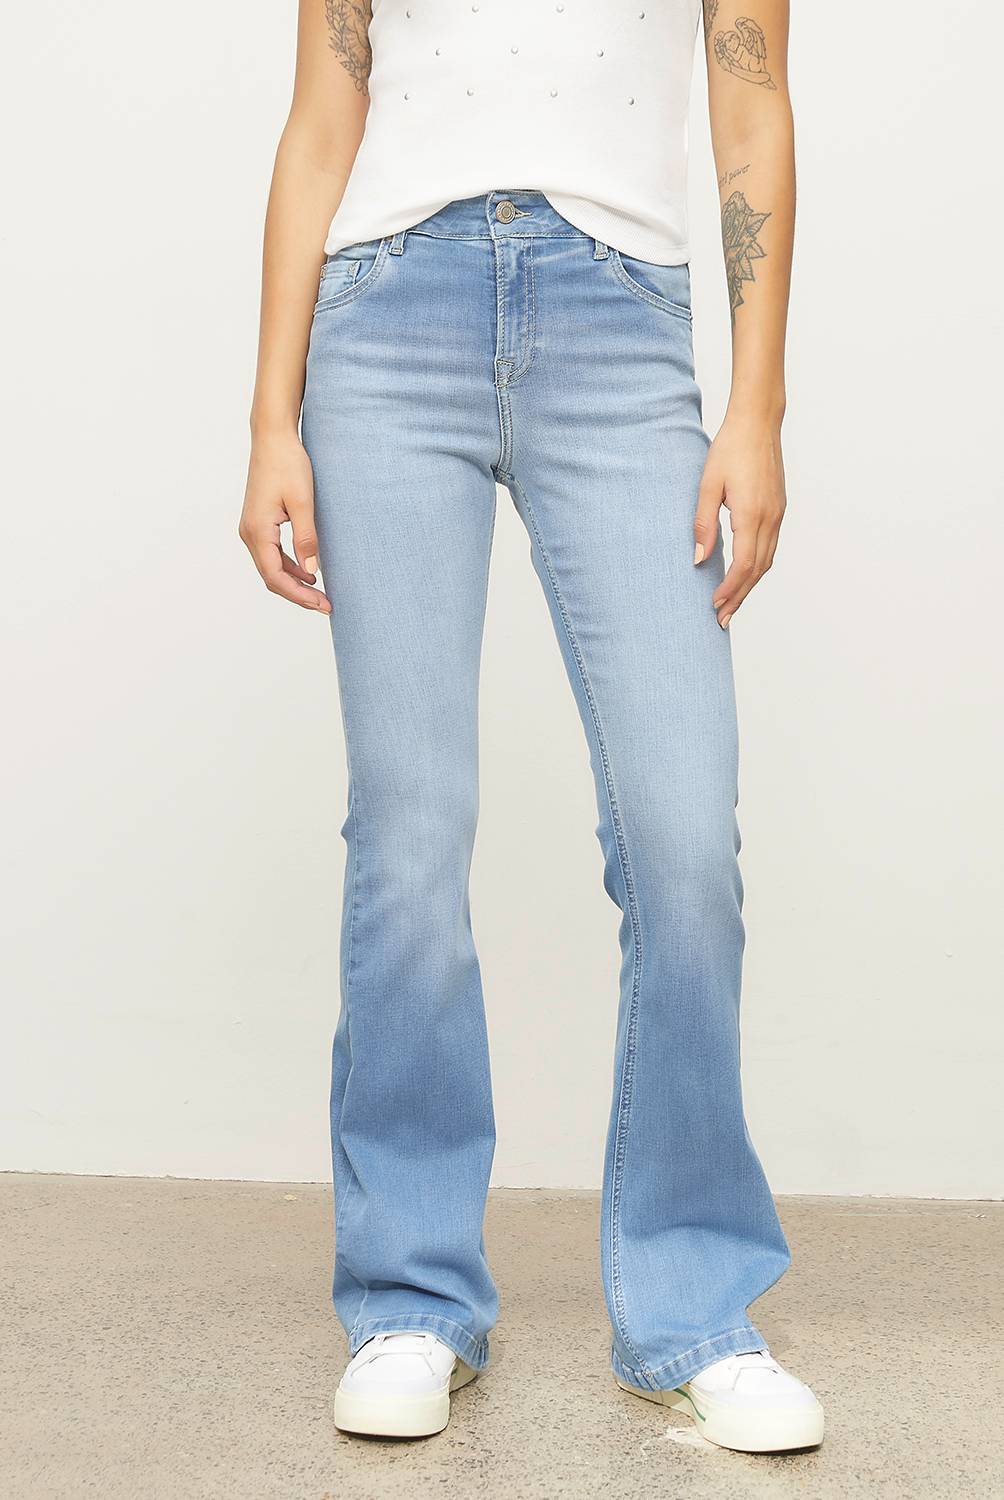 Americanino Jeans Mujer, falabella.com